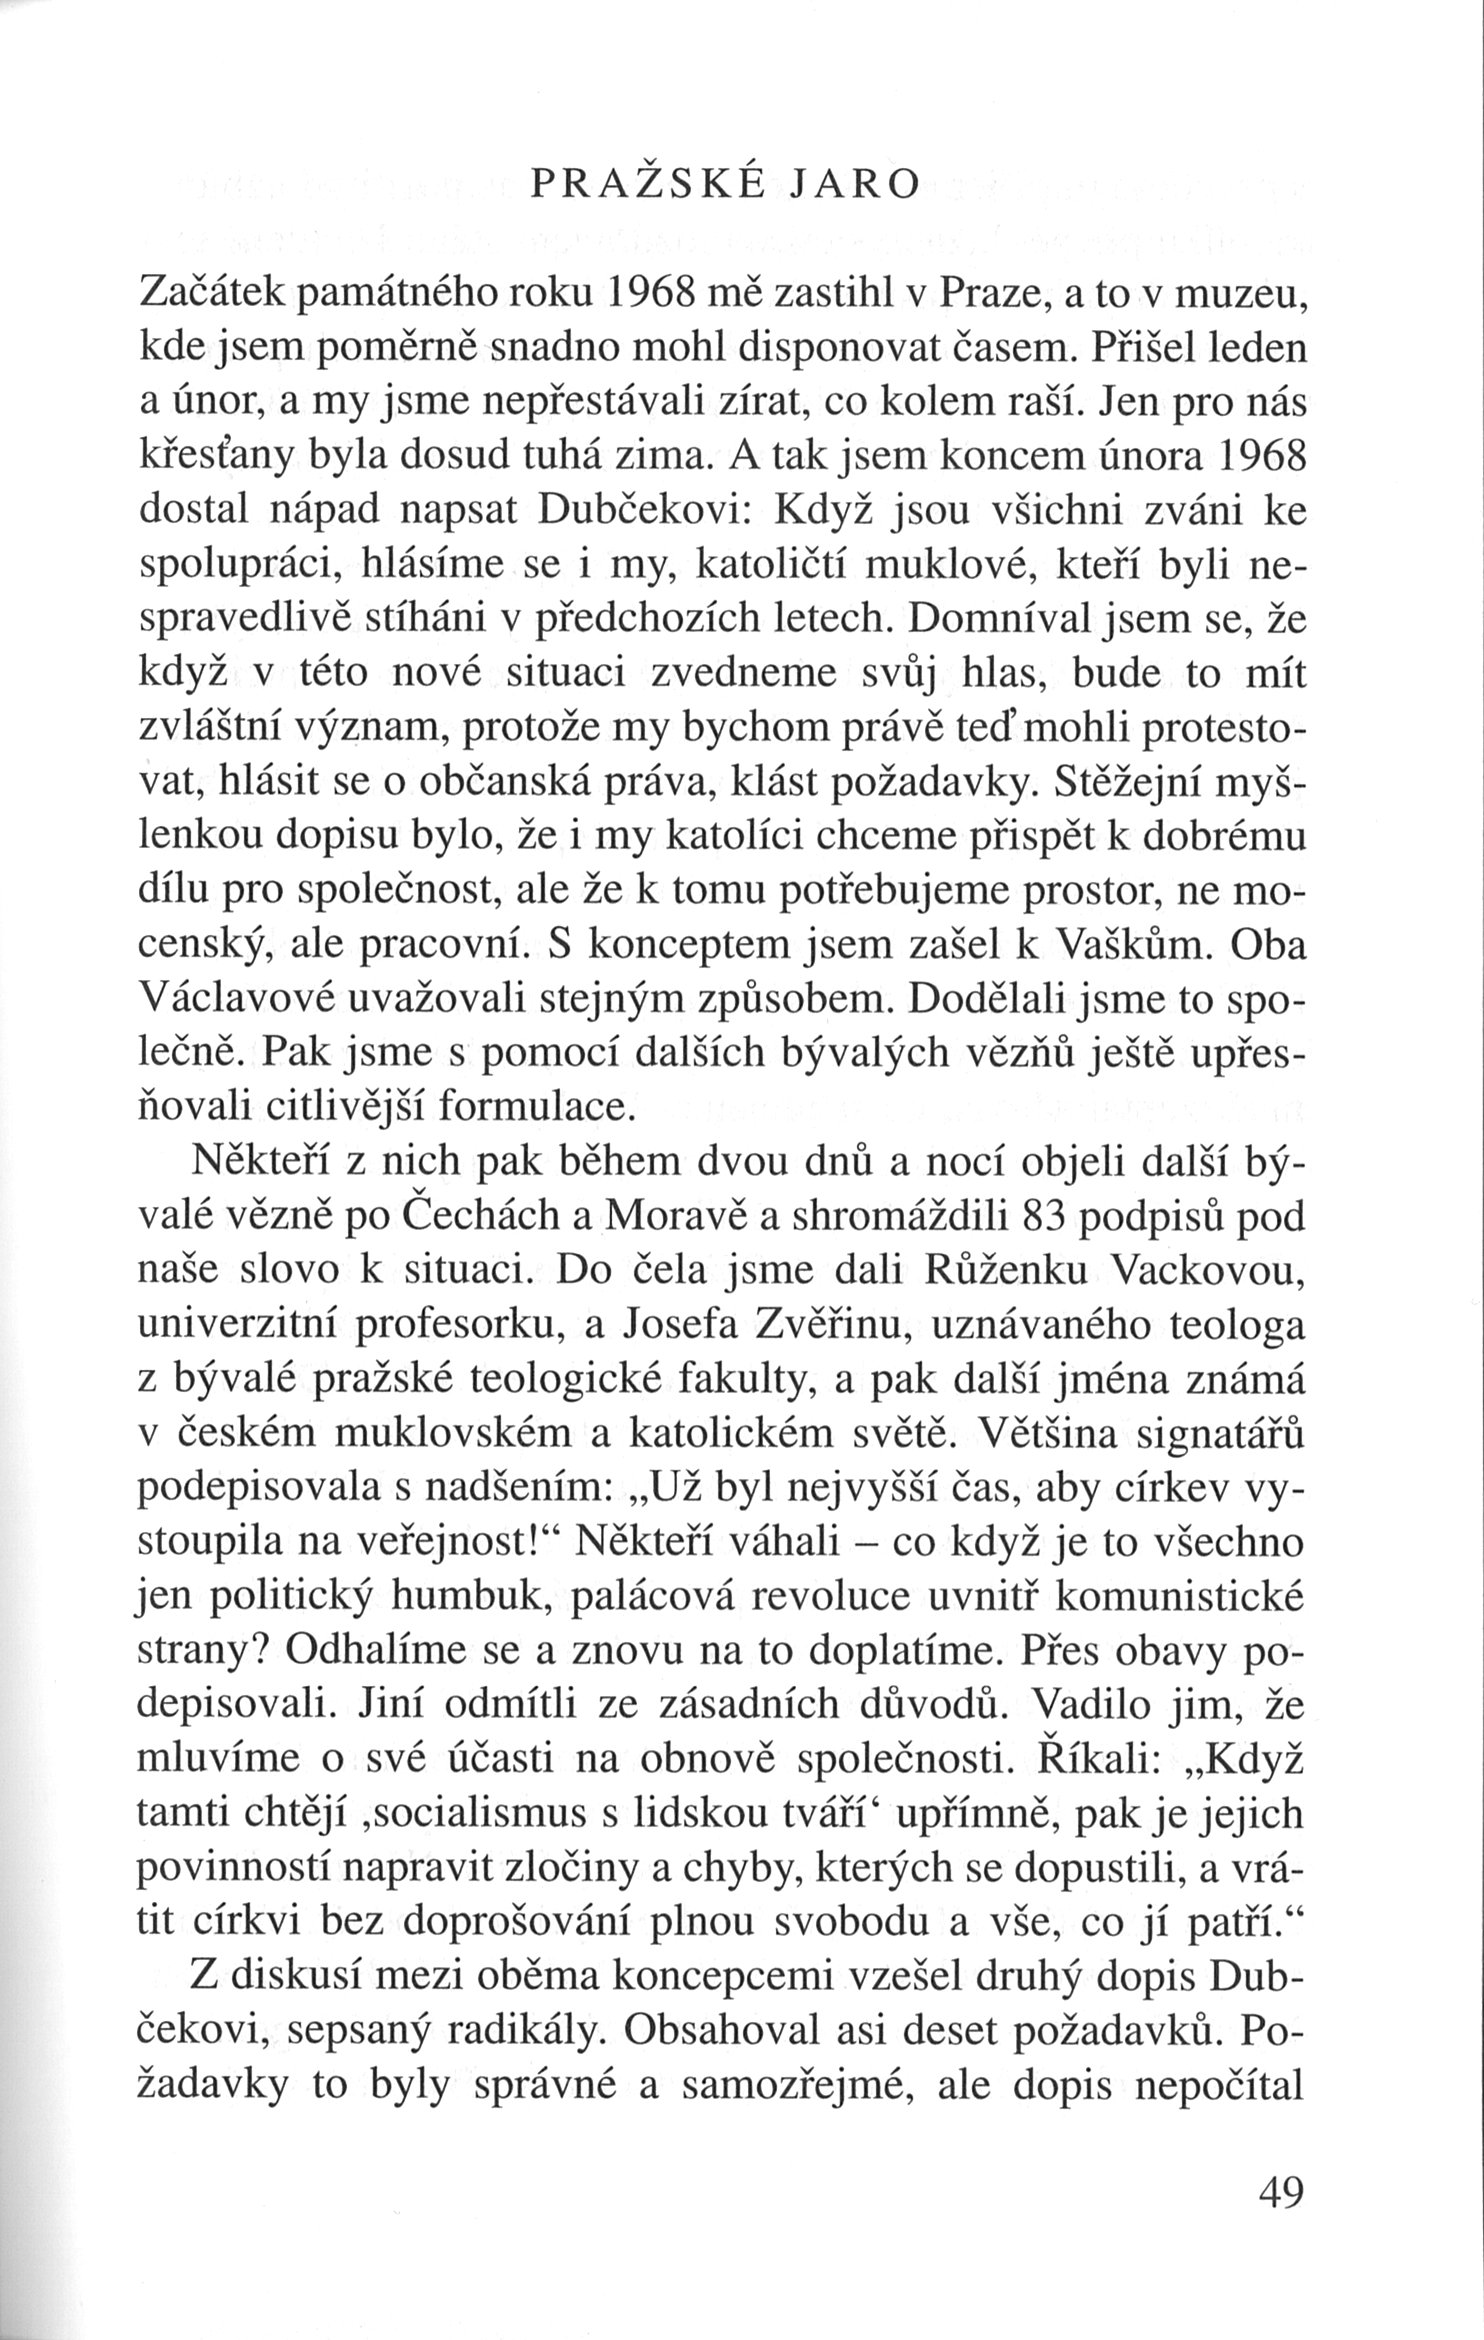 V zápasech za Boží věc / VZPOMÍNKY / Pražské jaro / strana 49